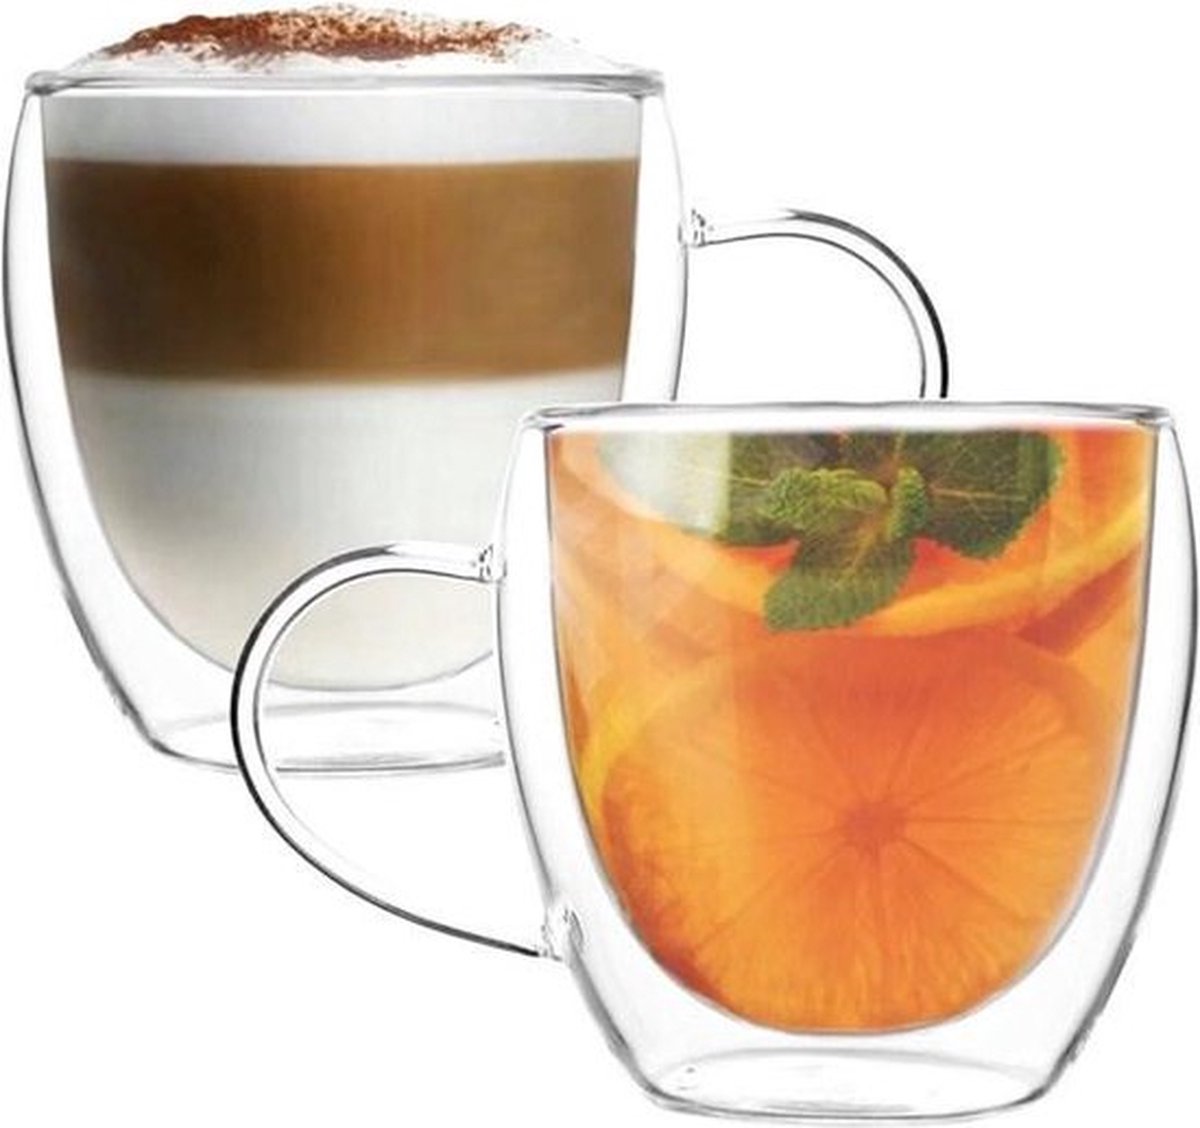 MONOO Dubbelwandige Glazen met Oor - Koffieglazen - Theeglazen - 250ML - 2 Stuks - Cappuccino Glazen - Latte Macchiato Glazen